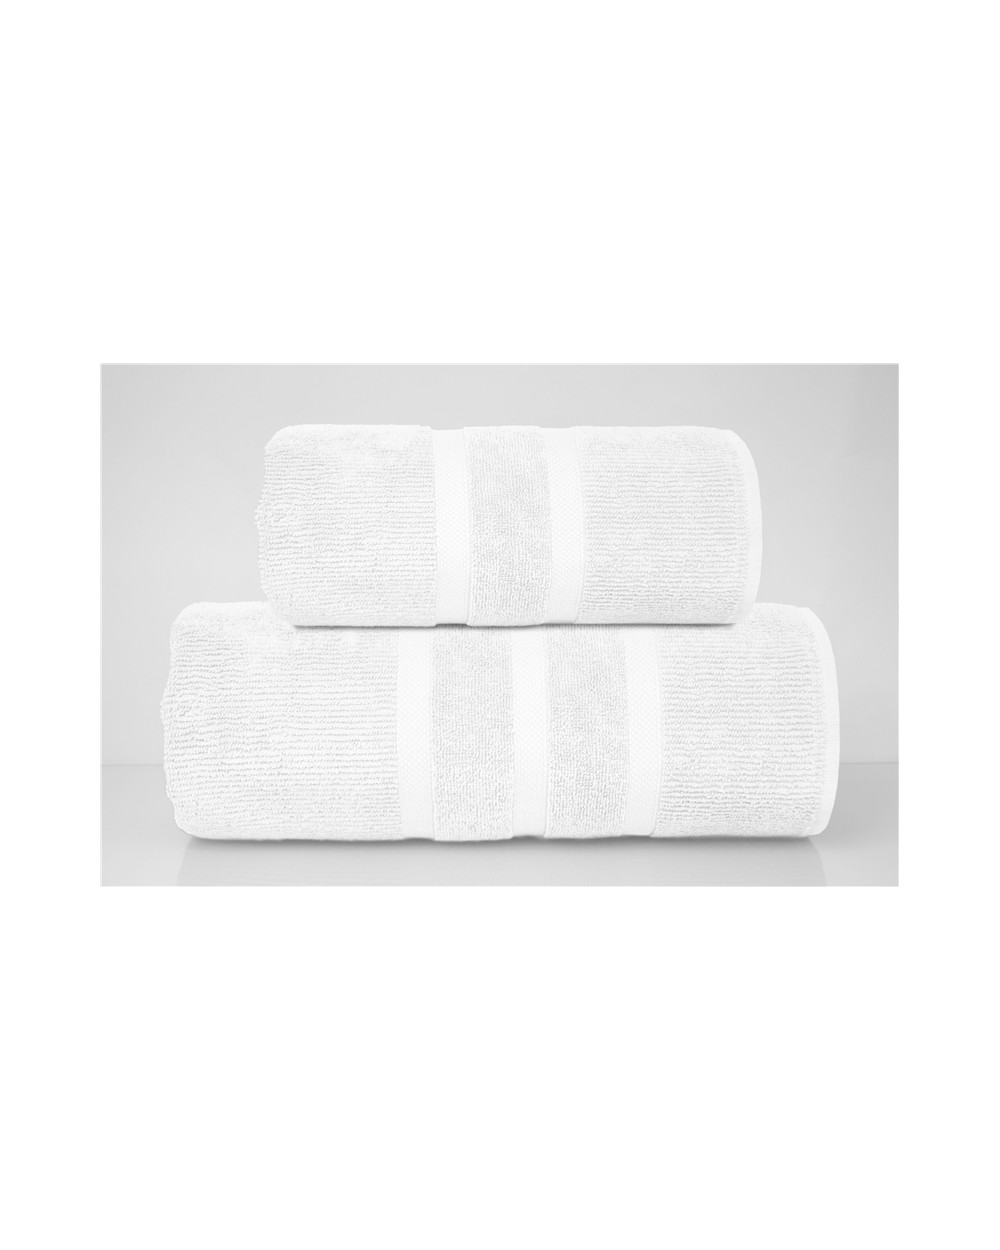 Ręcznik bawełna egipska 90X150 Only You biały Greno